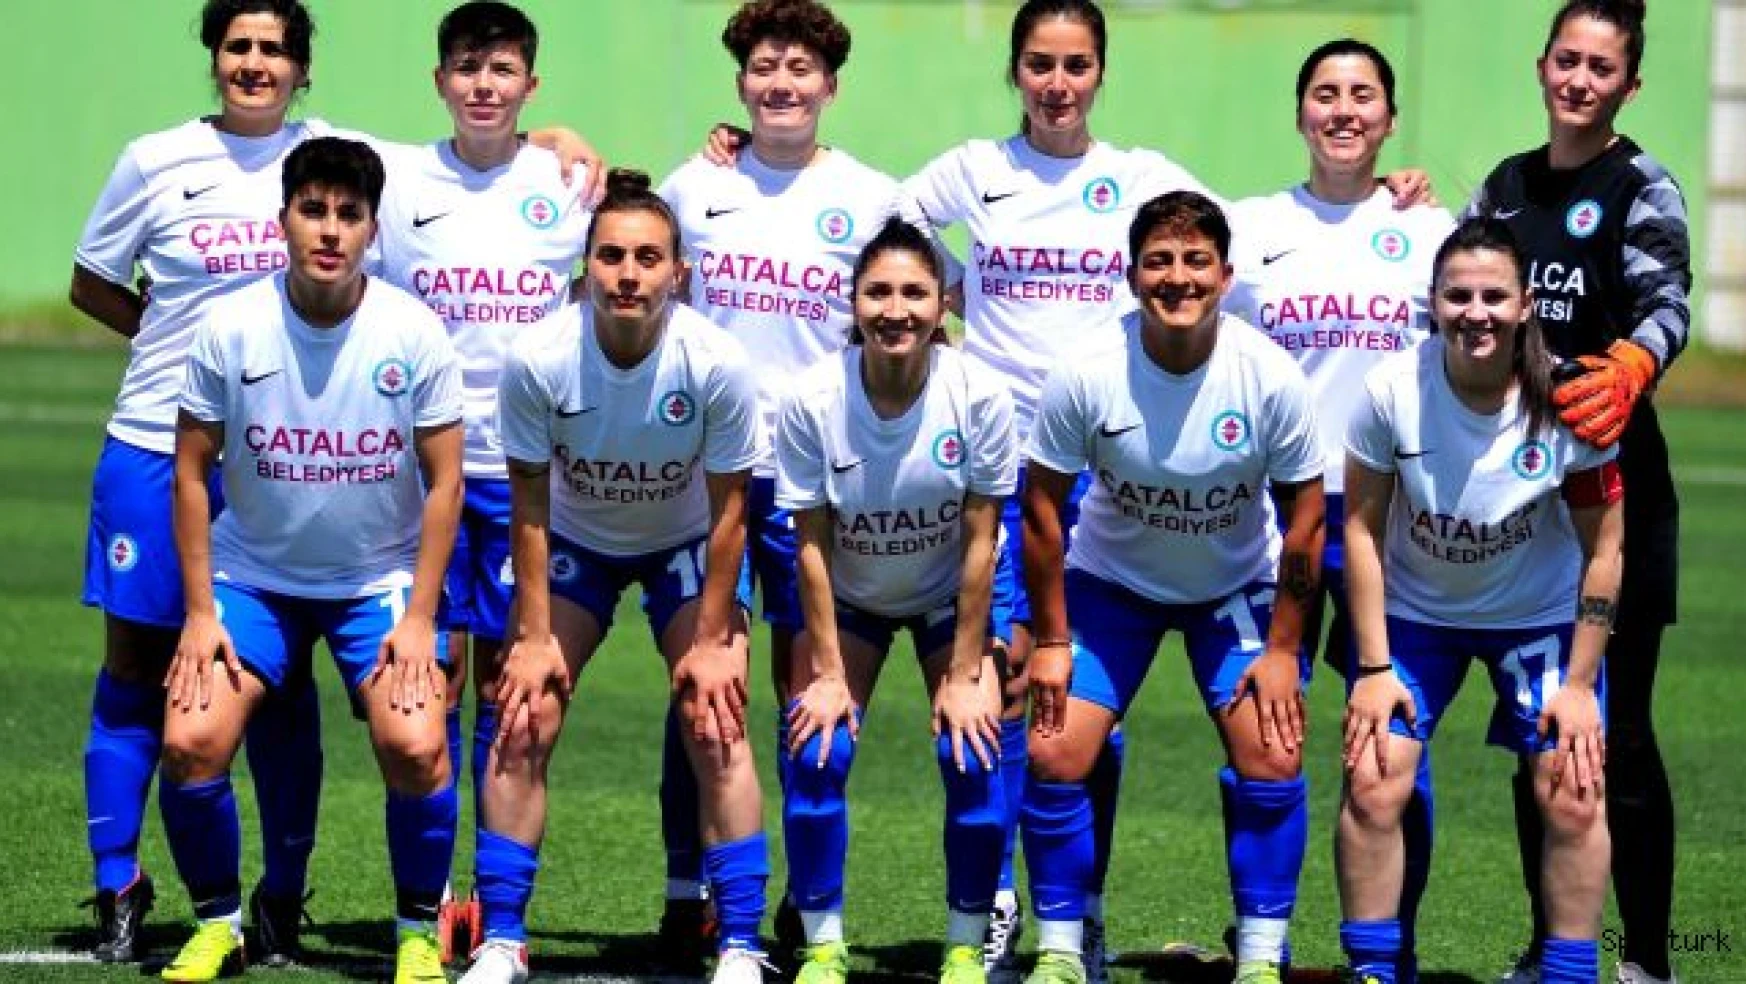 Çatalca'nın Kızlarından gol şov 16-0